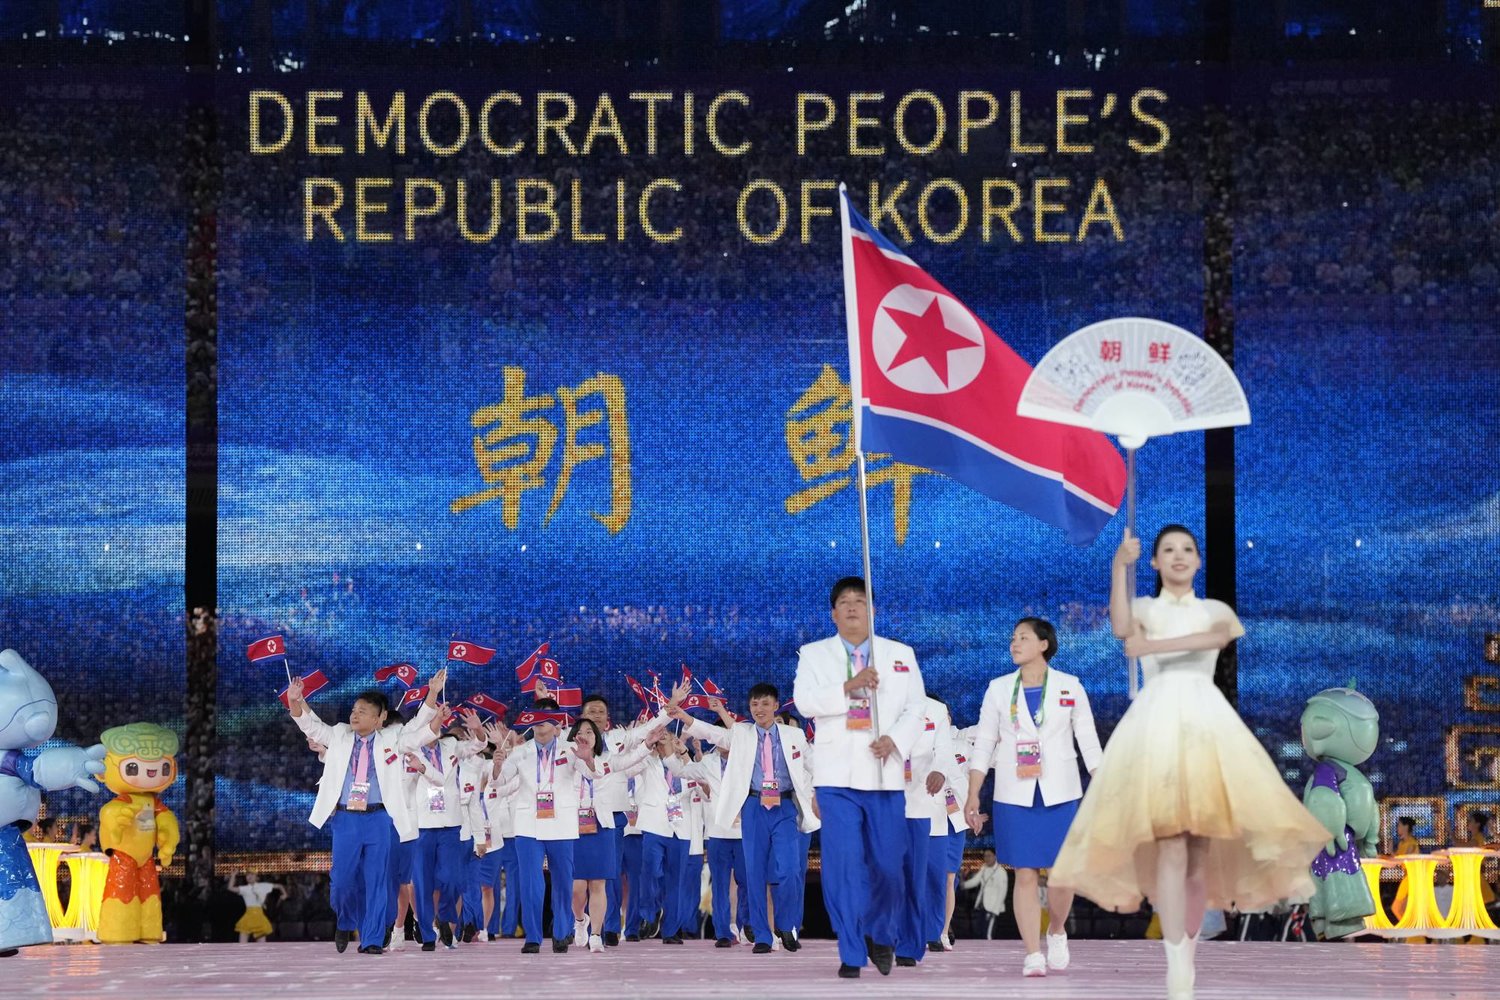 علم كوريا الشمالية بات مشاهداً في كل مكان بهانغتشو الصينية (أ.ب)